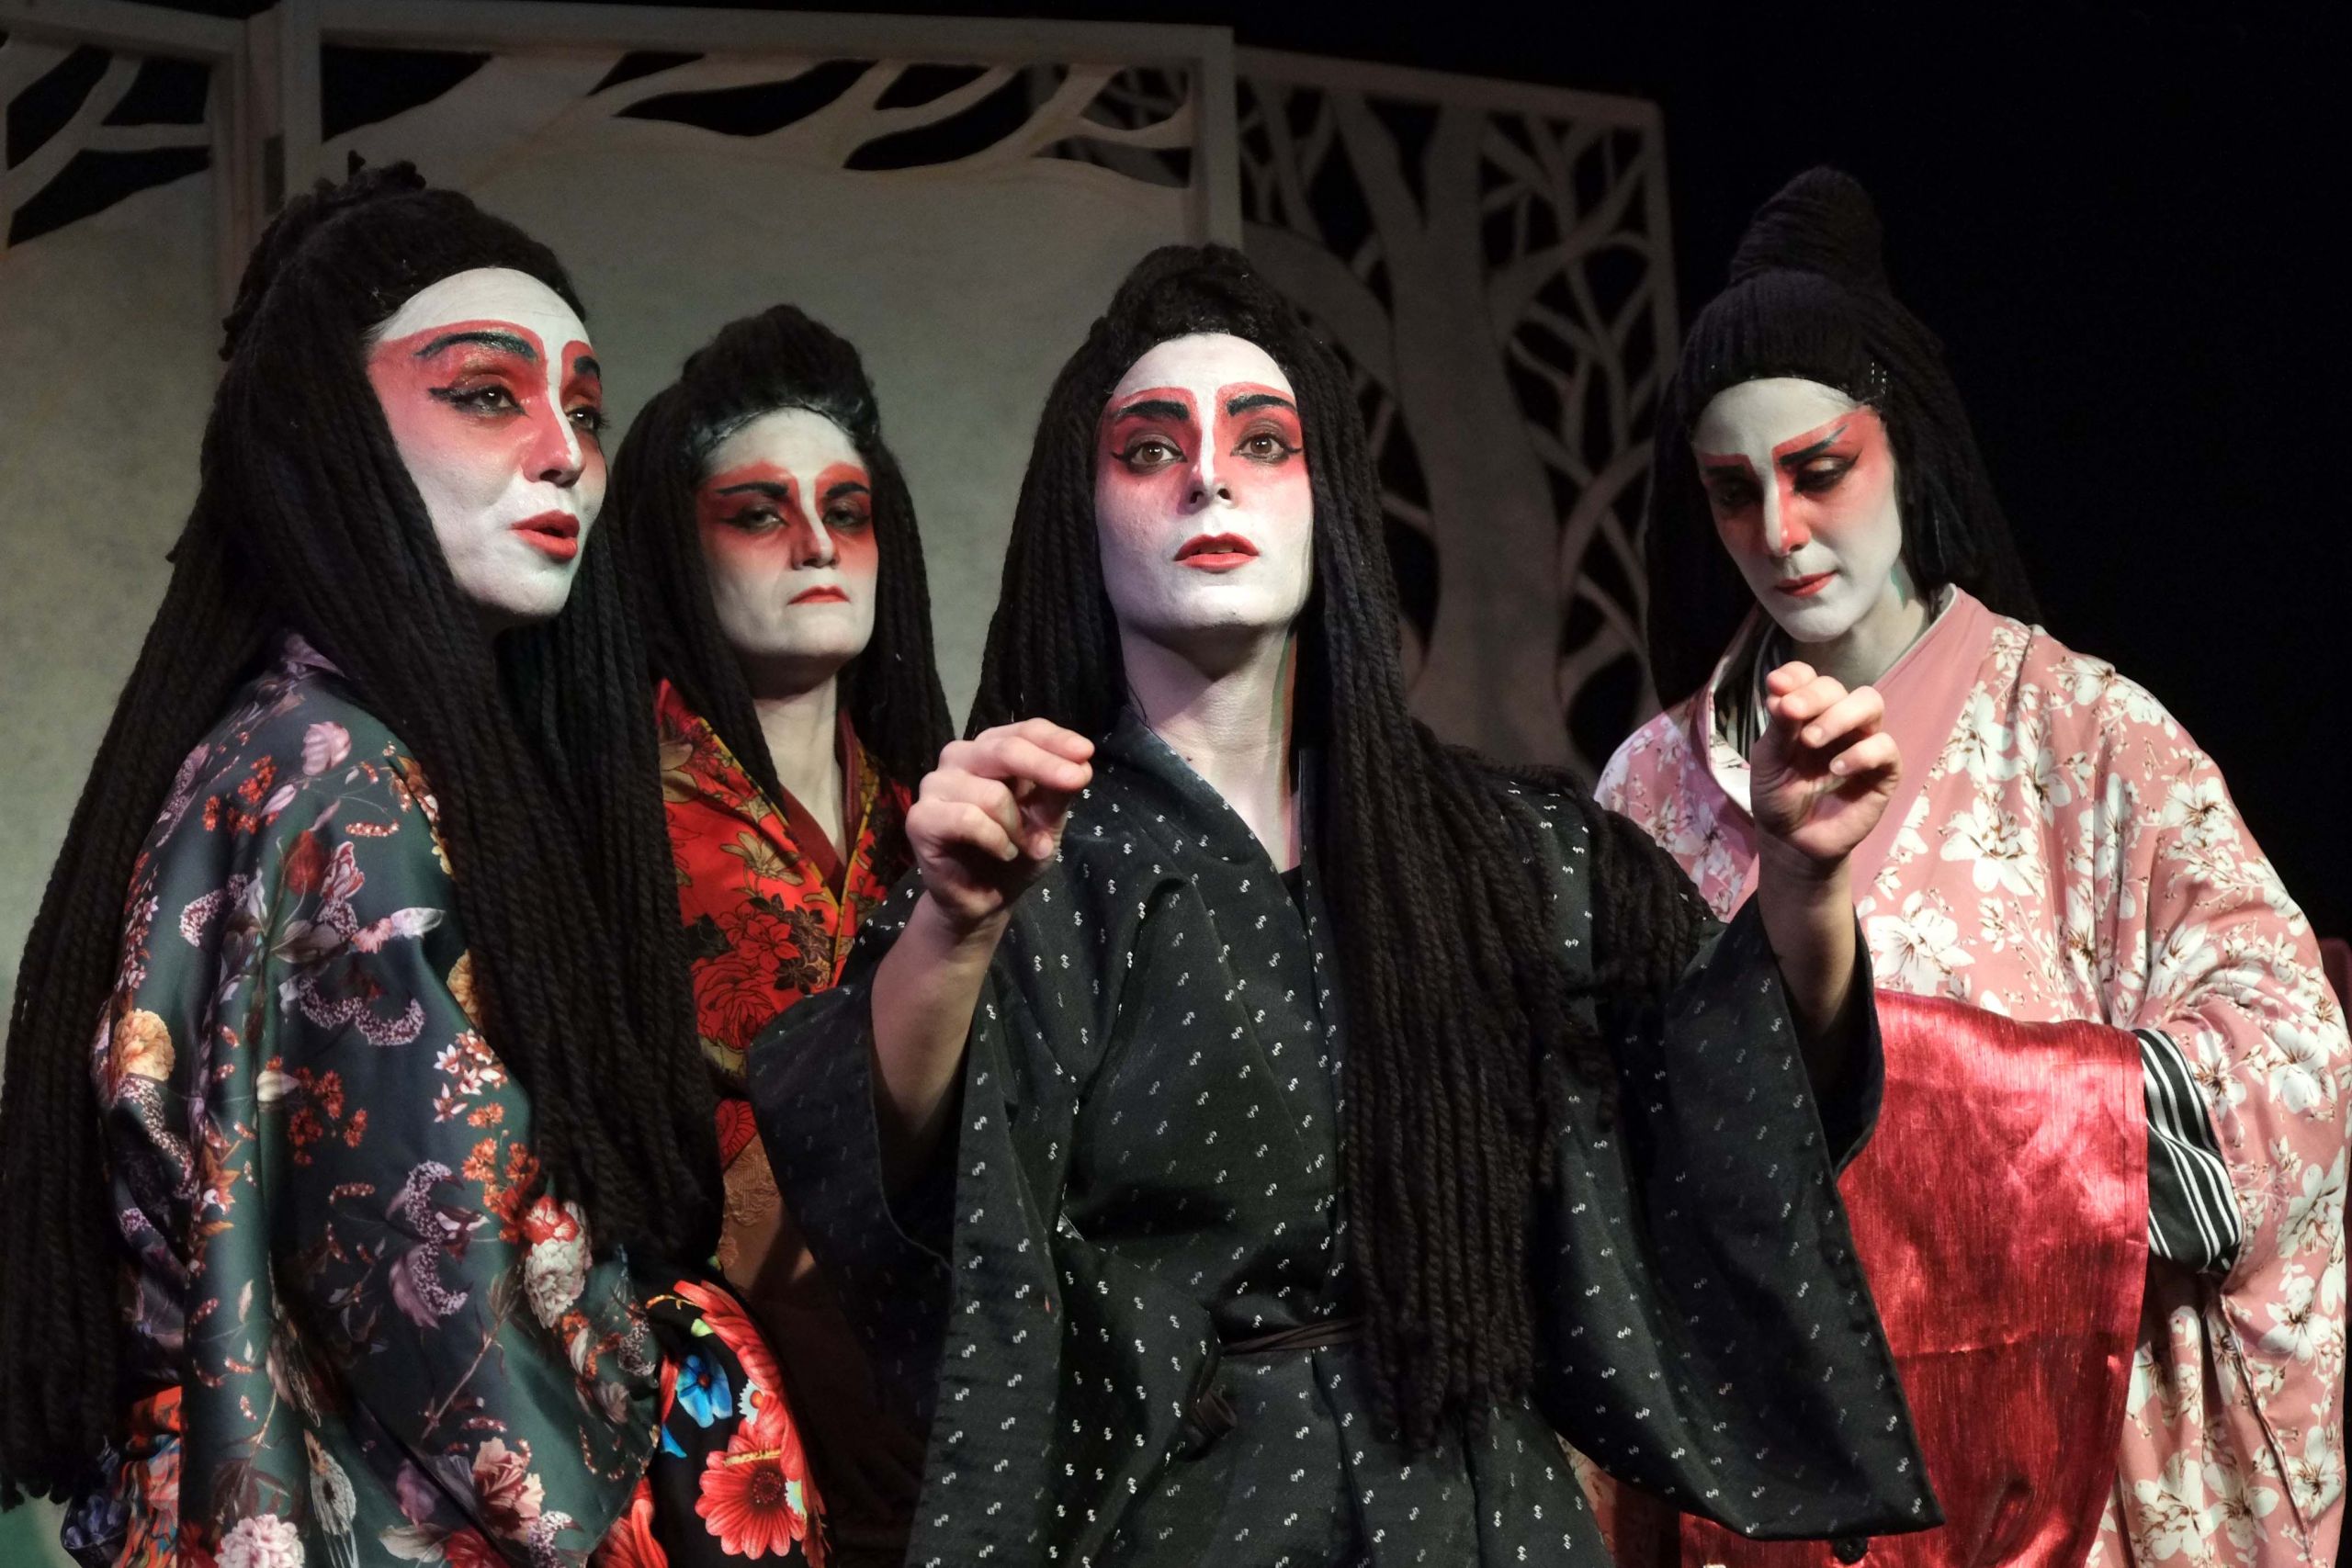 Ιστορίες φαντασμάτων από την Ιαπωνία, από τη Θεατρική Ομάδα Κωφών «Τρελά Χρώματα» στο θέατρο Άβατον